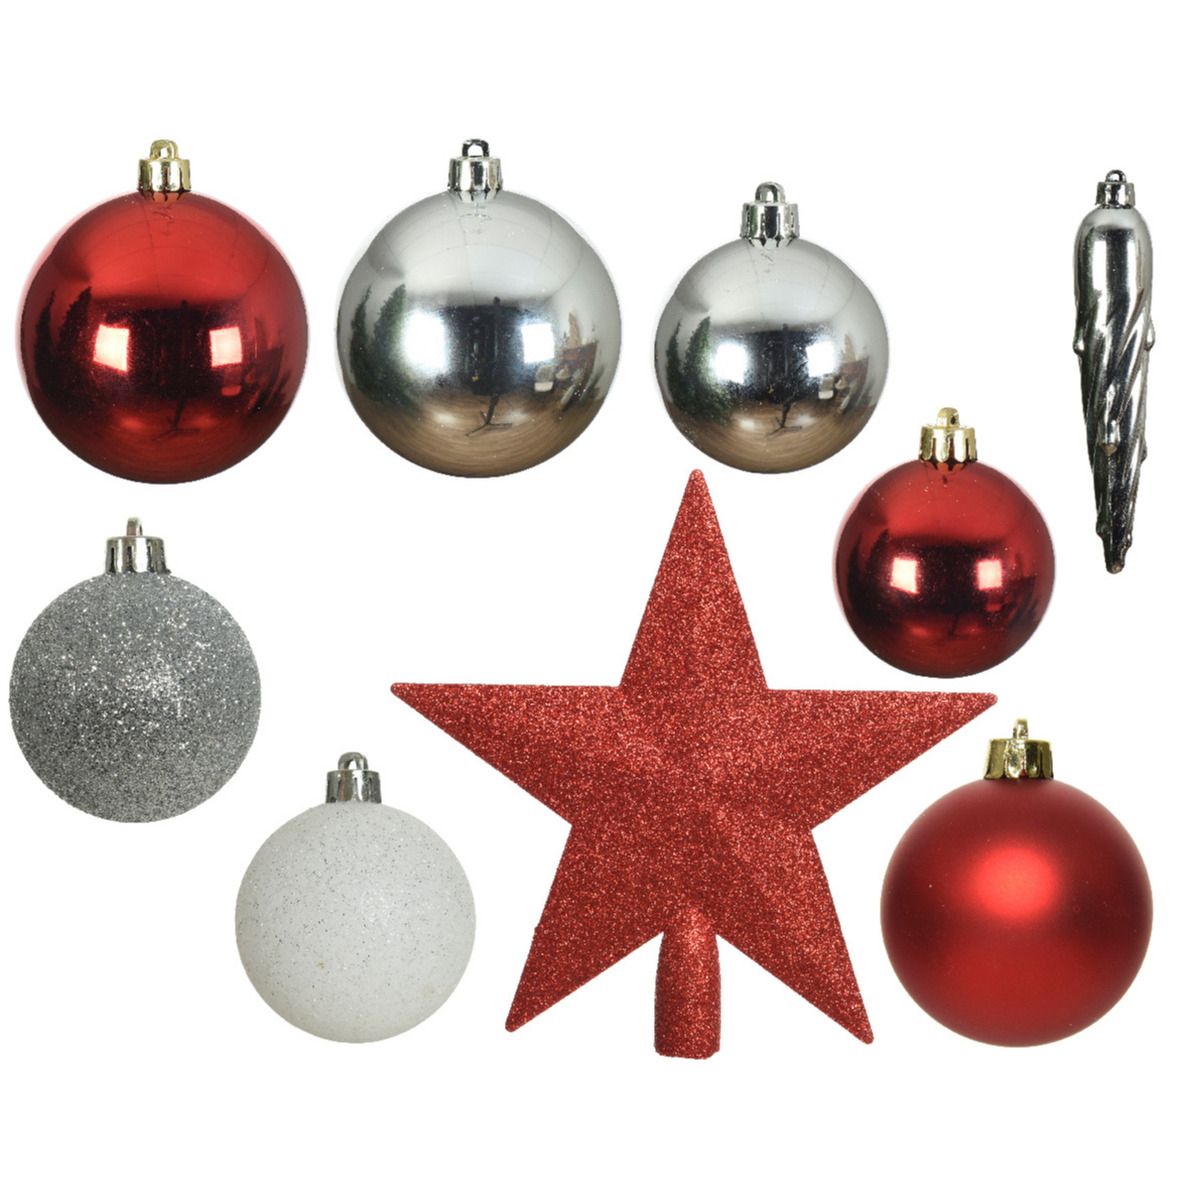 33x stuks kunststof kerstballen met piek rood/wit/zilver 5-6-8 cm